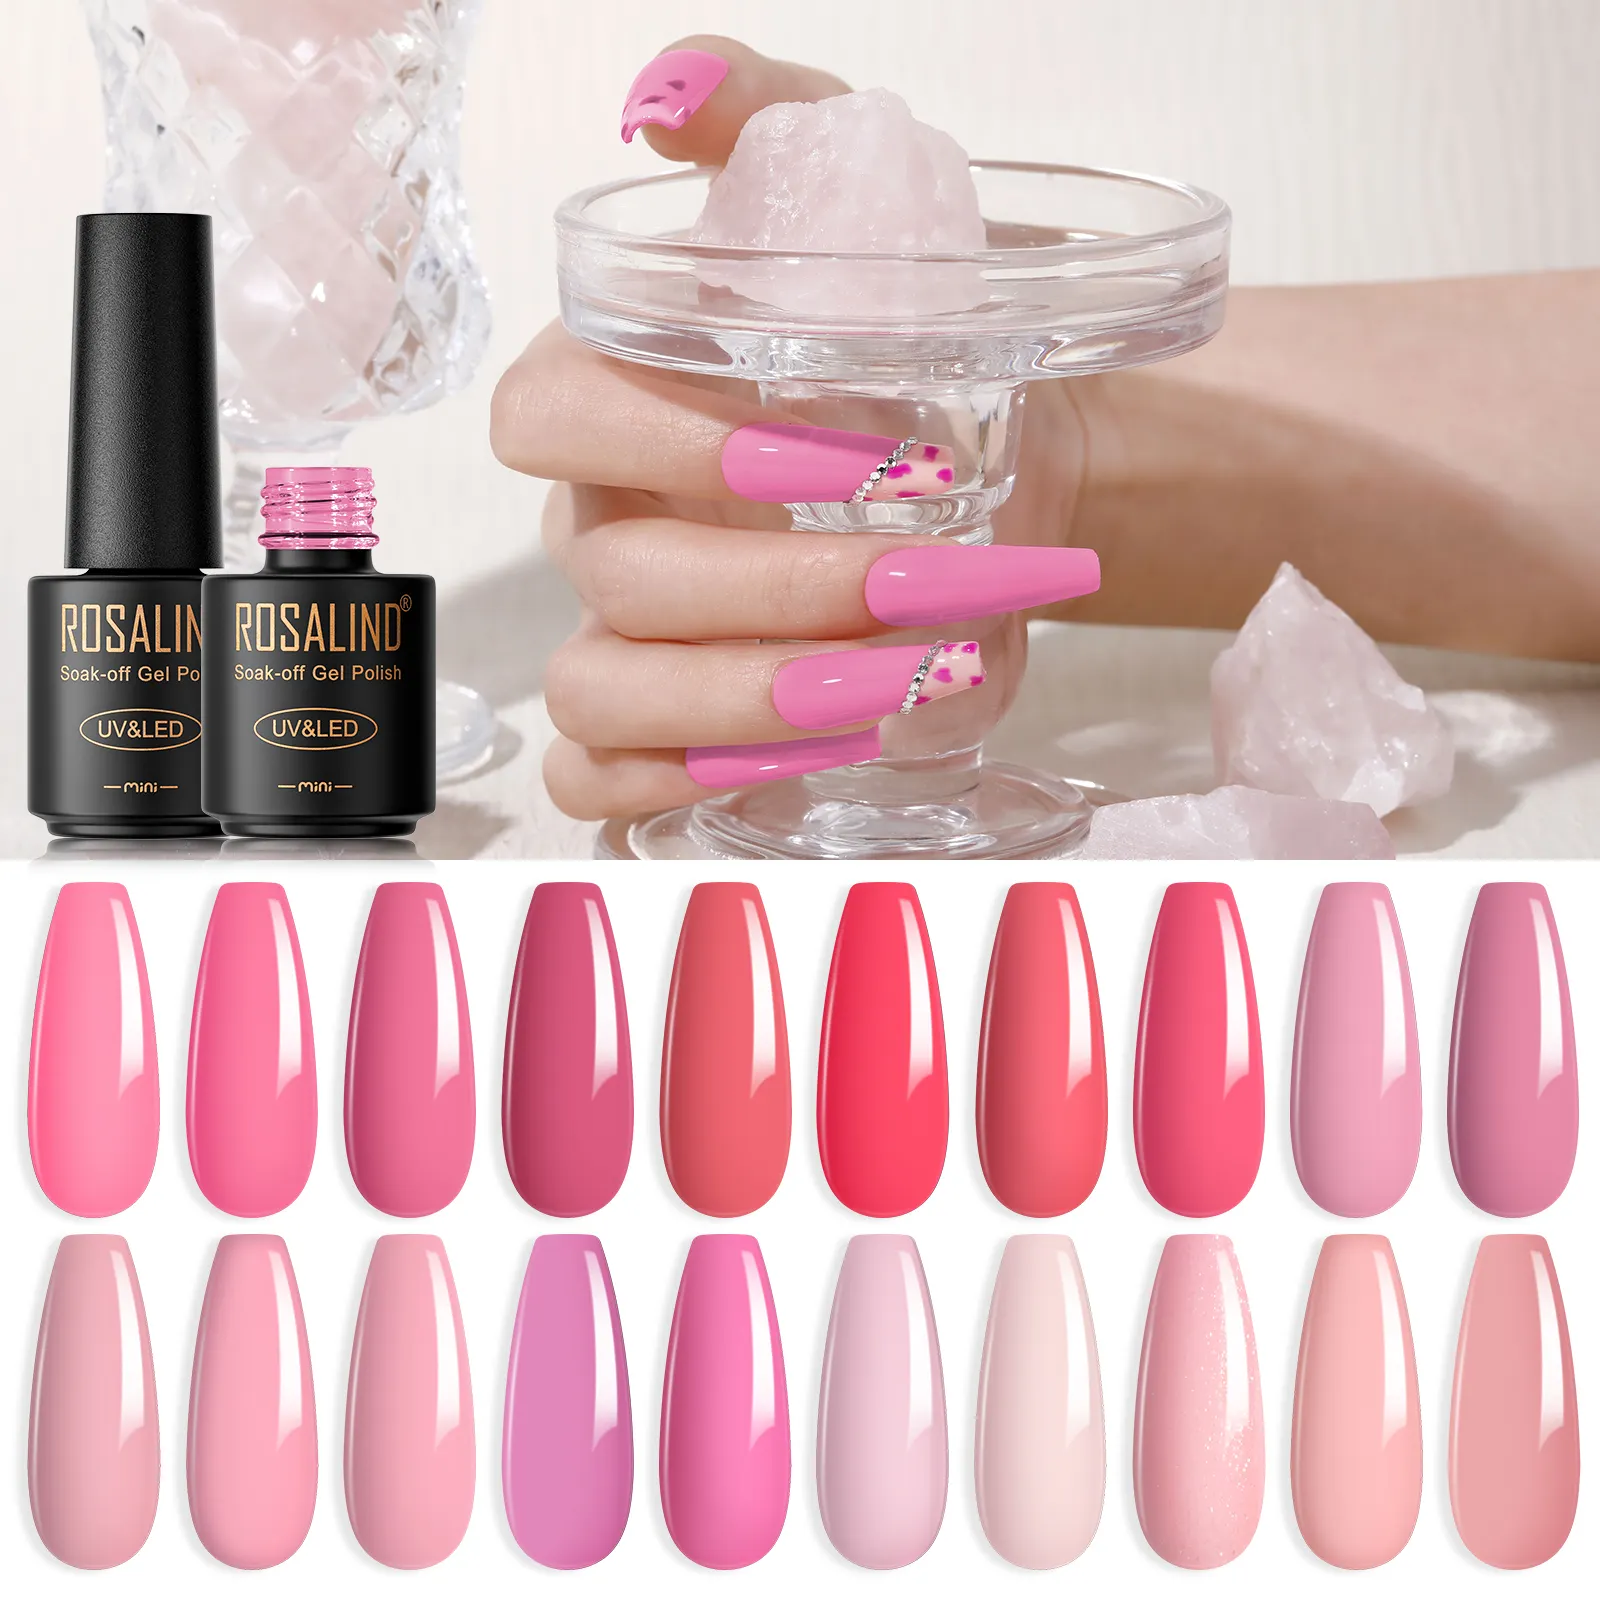 ROSALIND OEM etichetta privata di alta qualità a lunga durata soak off pink pure color 5ml smalto per unghie gel uv giapponese per salone di nail art